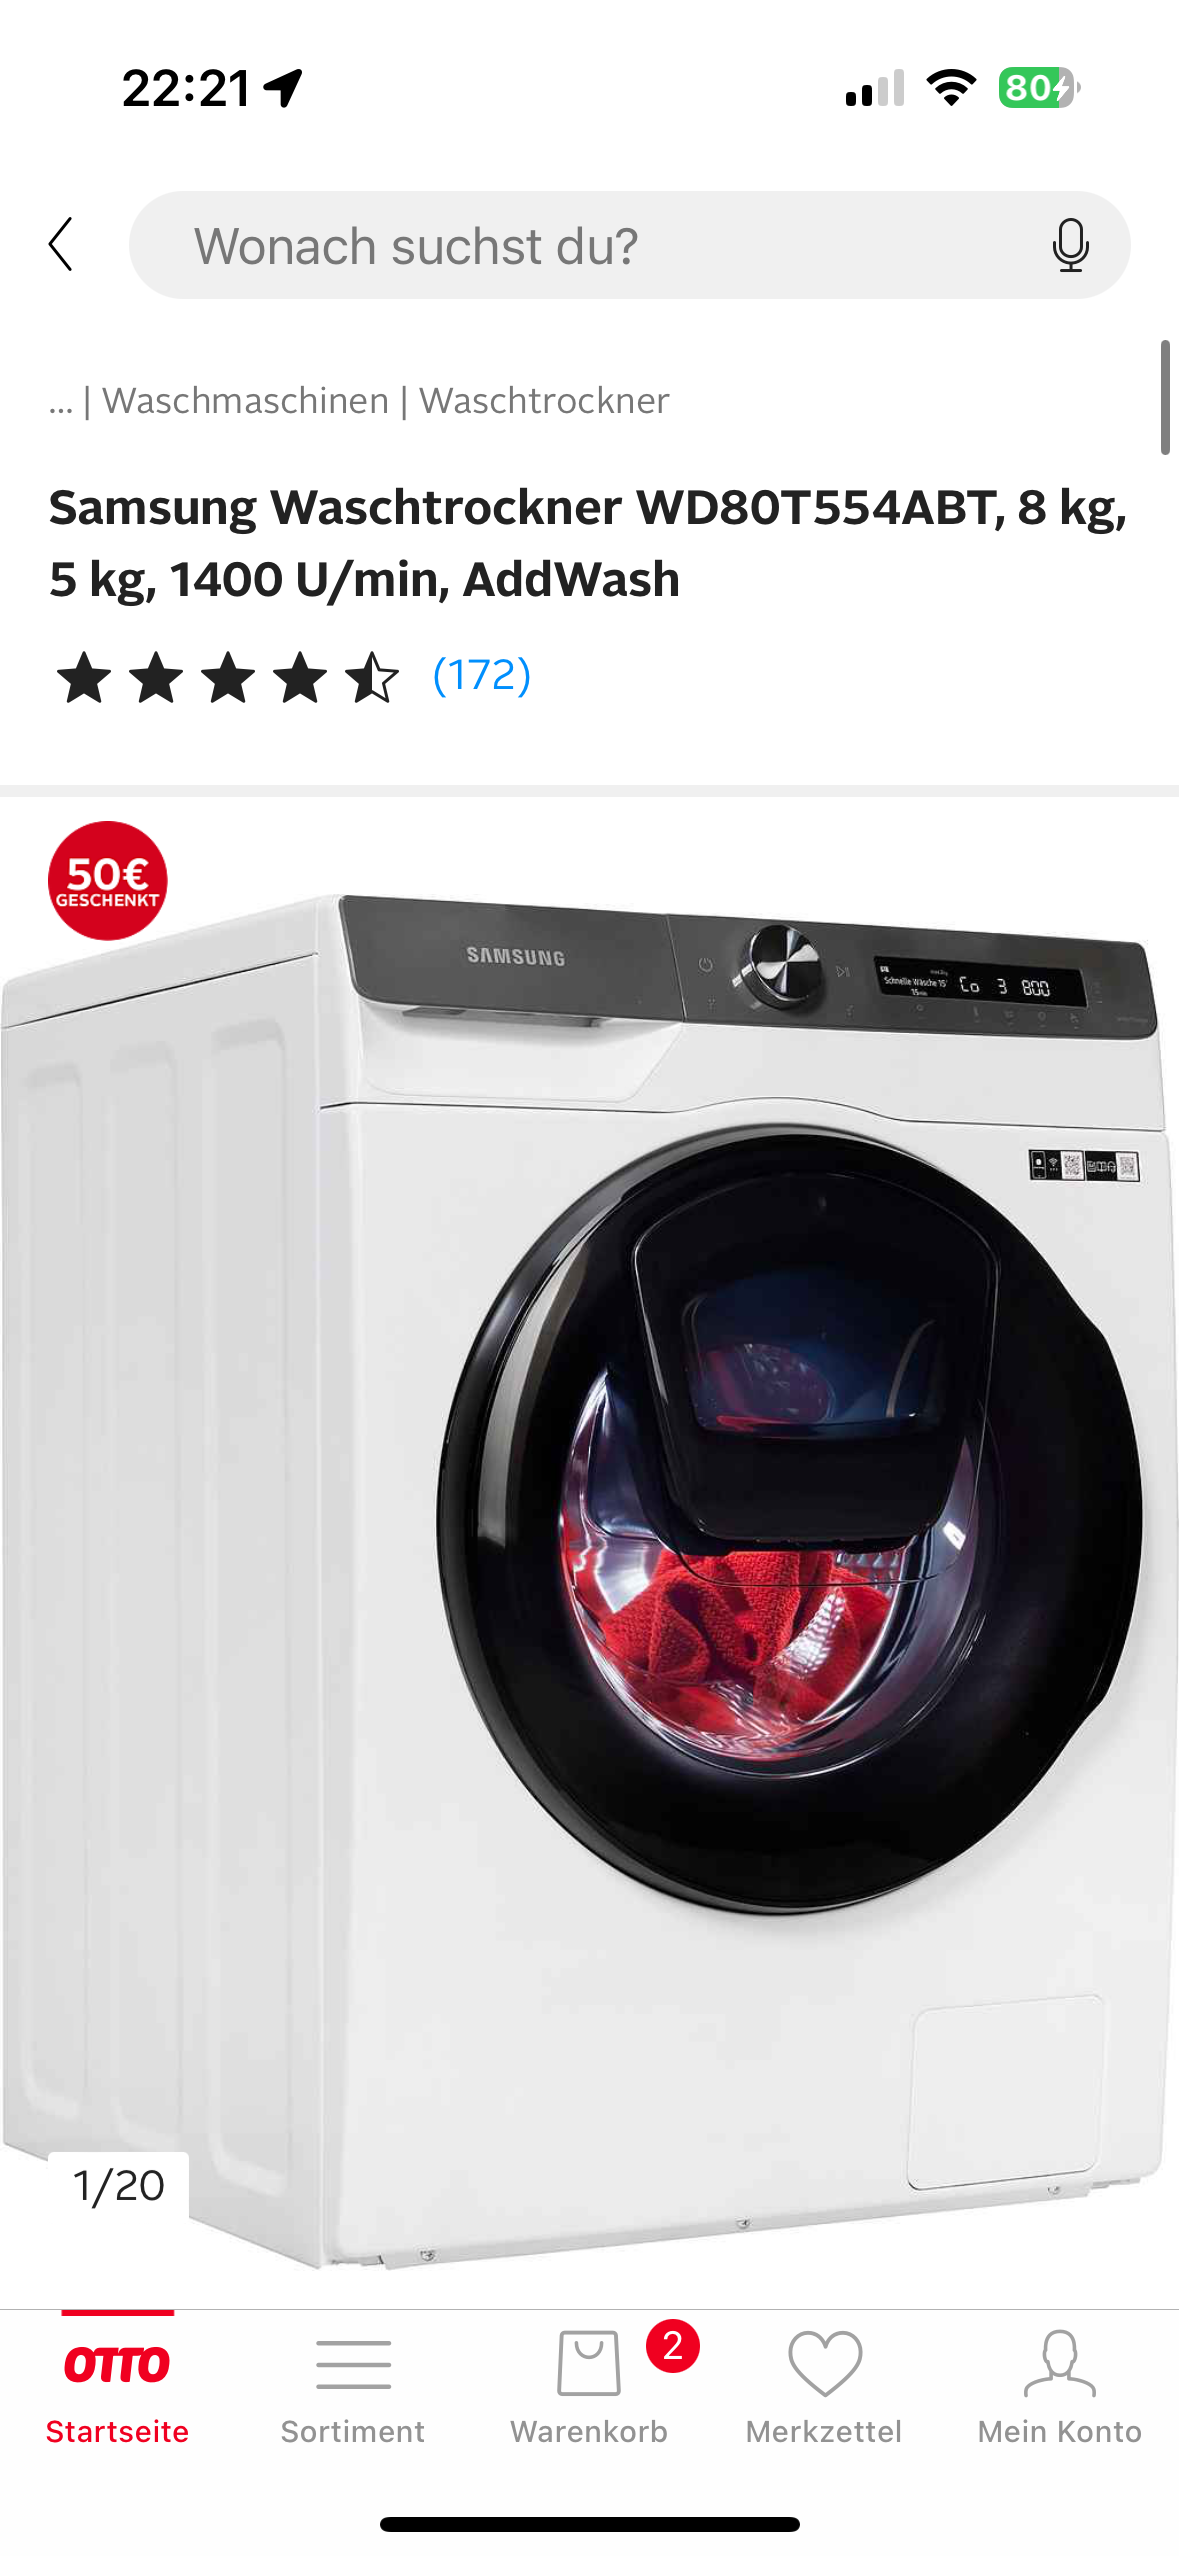 Würdet ihr diesen waschtrockner kaufen? (Waschmaschine, Haushaltsgeräte,  Trockner)